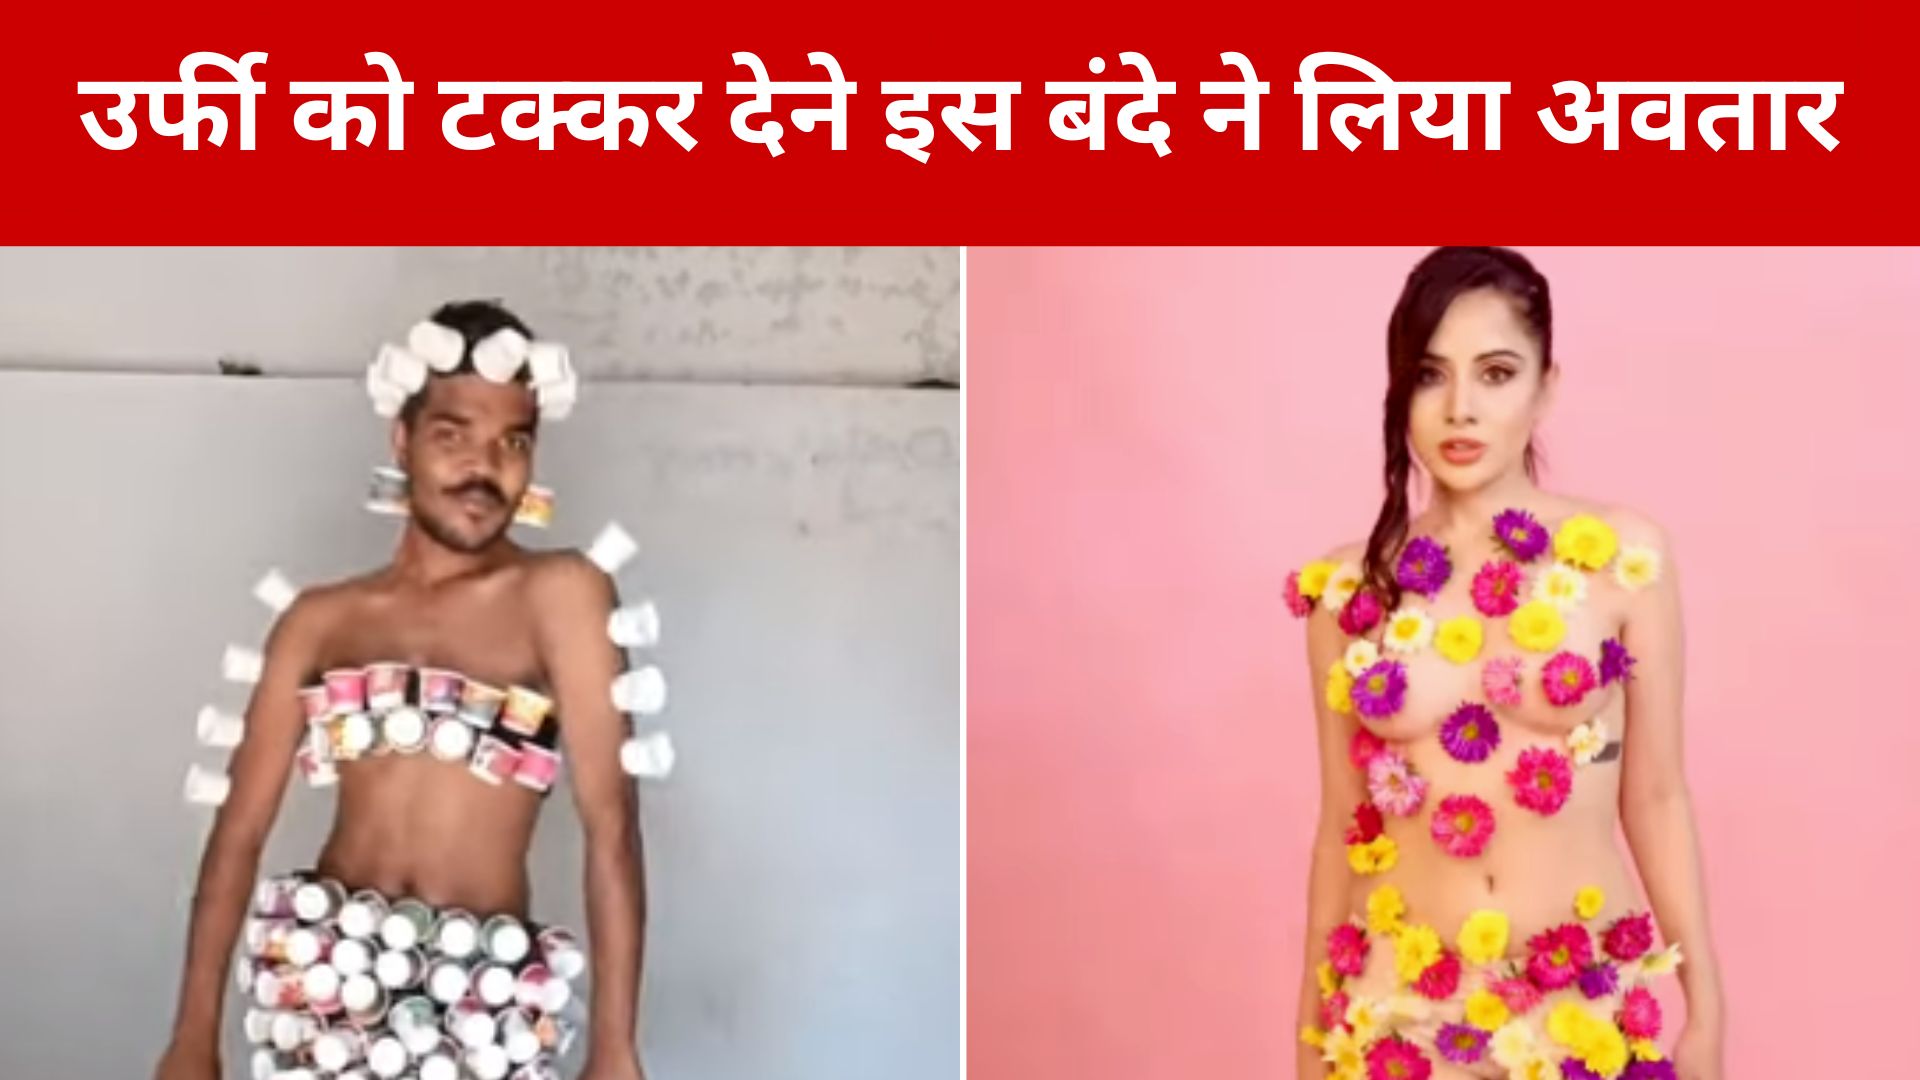 VIDEO : उर्फी जावेद को टक्कर देने इस बंदे ने लिया अवतार, फैशन देख हो जाएगा दिमाग खराब !  